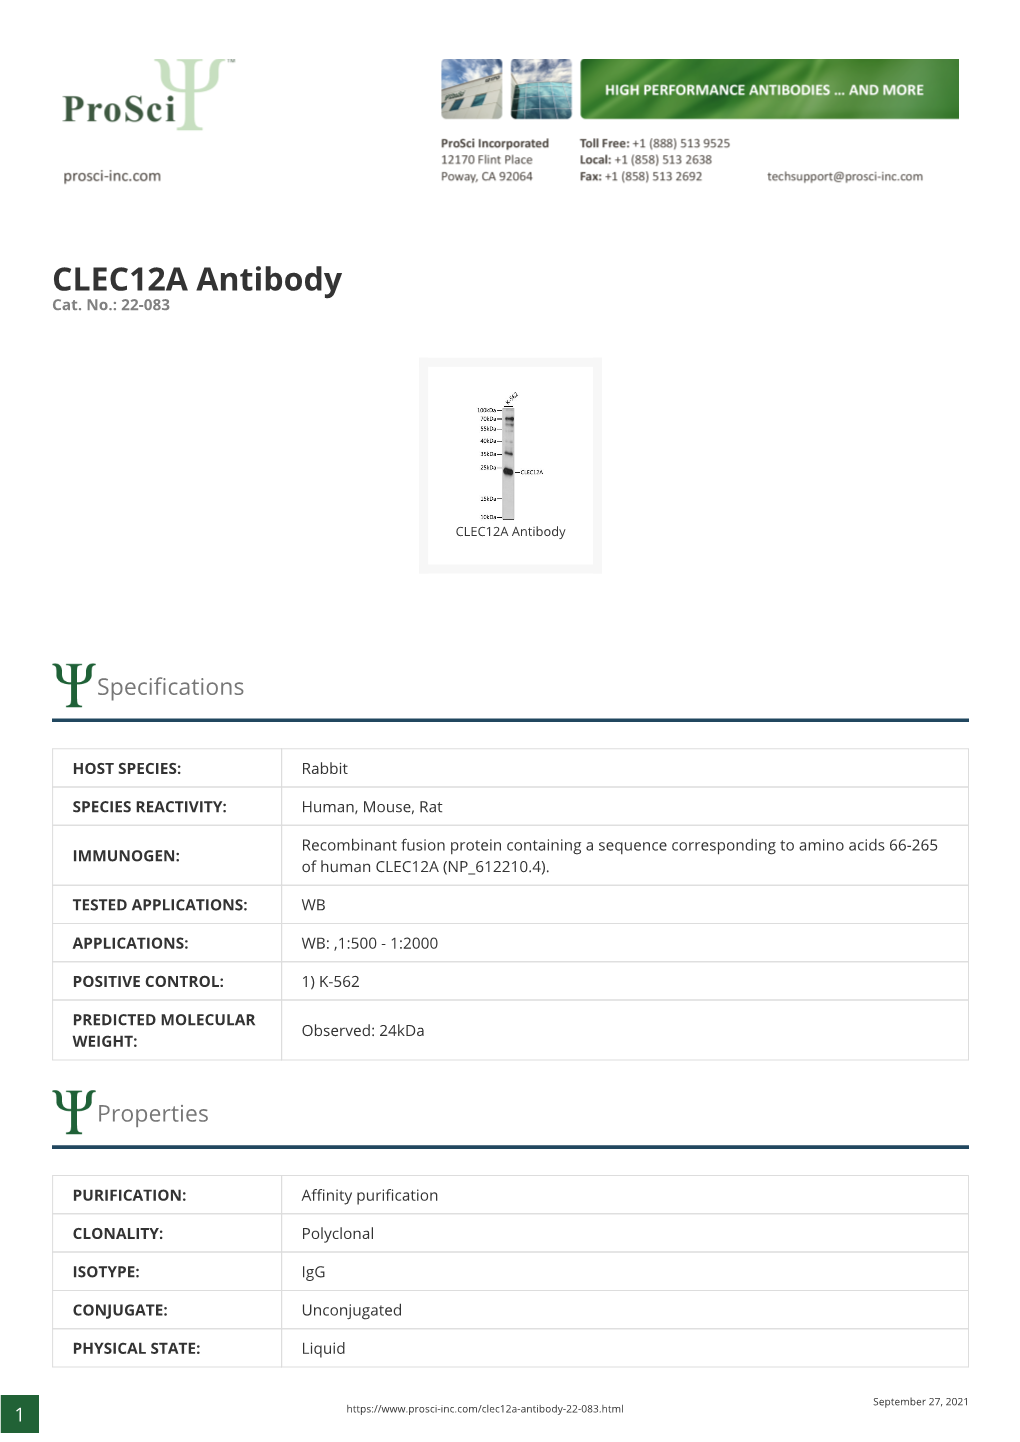 CLEC12A Antibody Cat